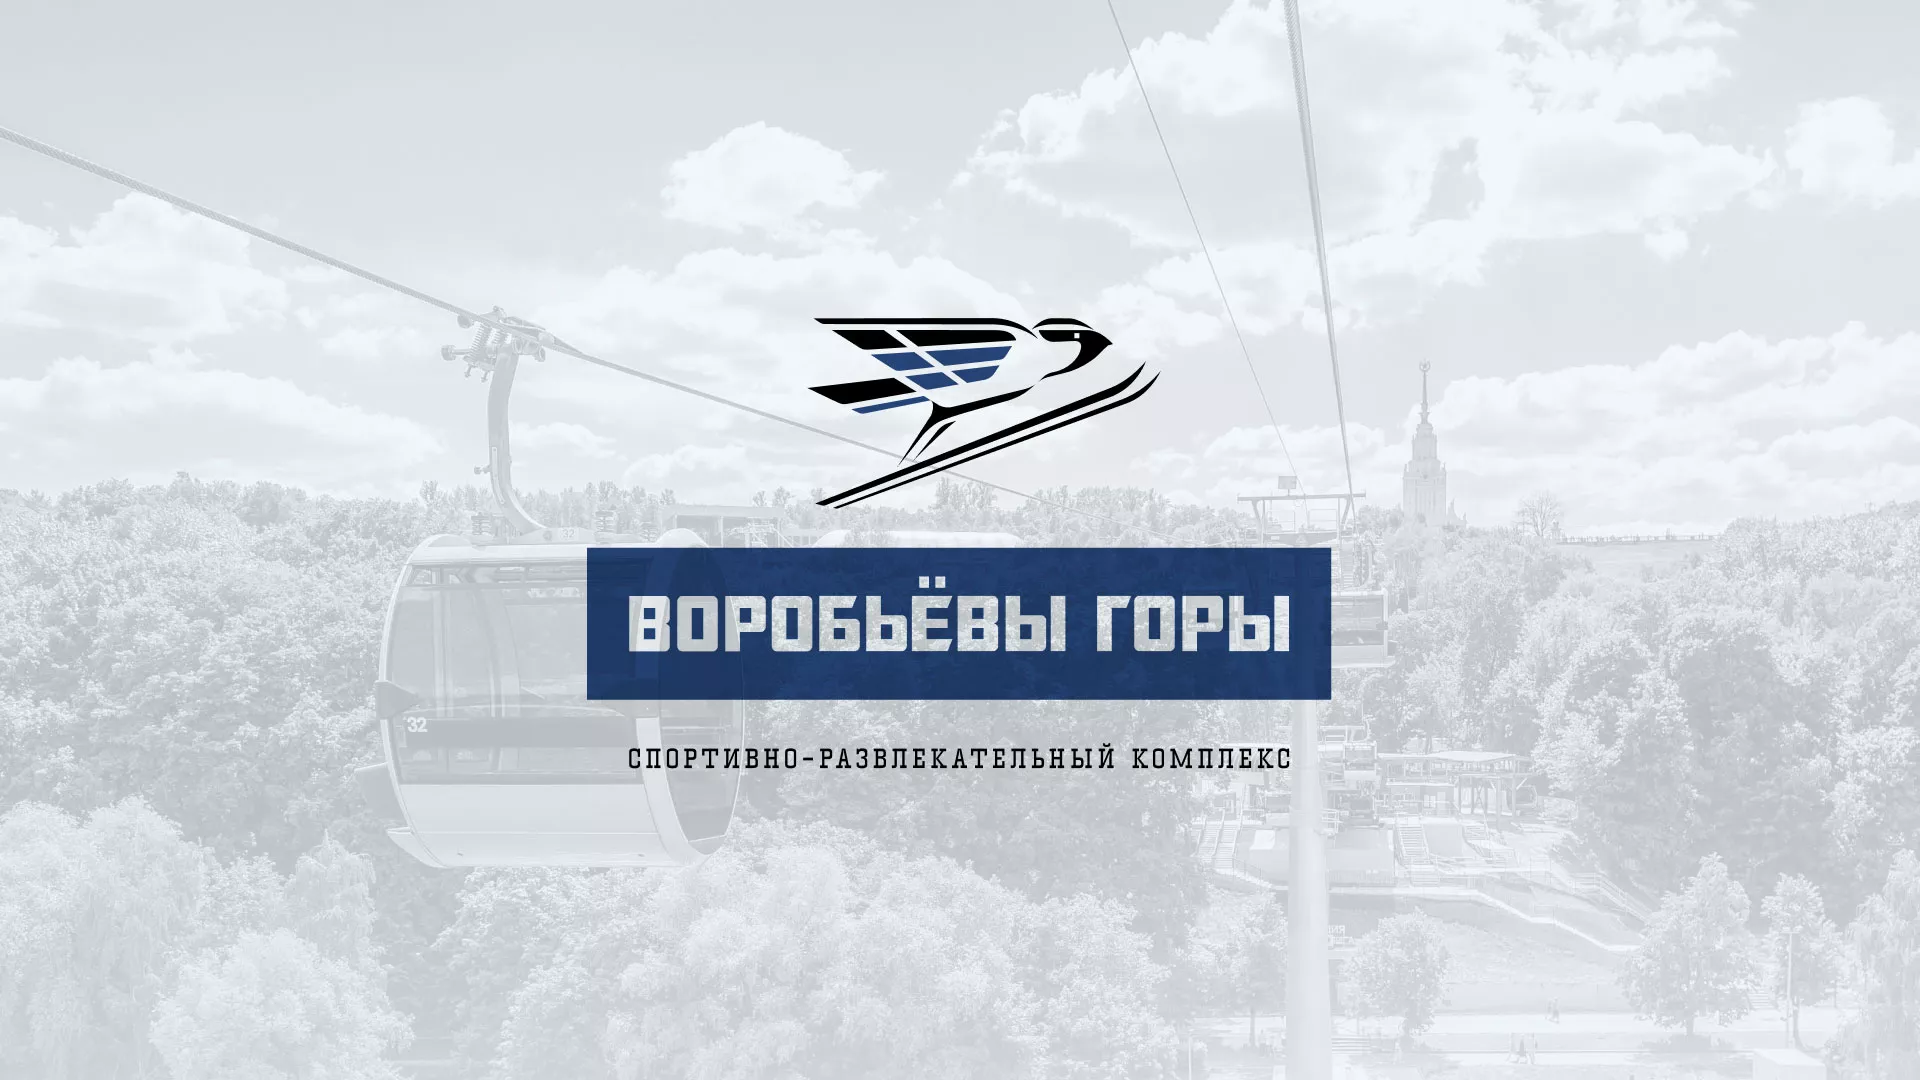 Разработка сайта в Железногорске для спортивно-развлекательного комплекса «Воробьёвы горы»